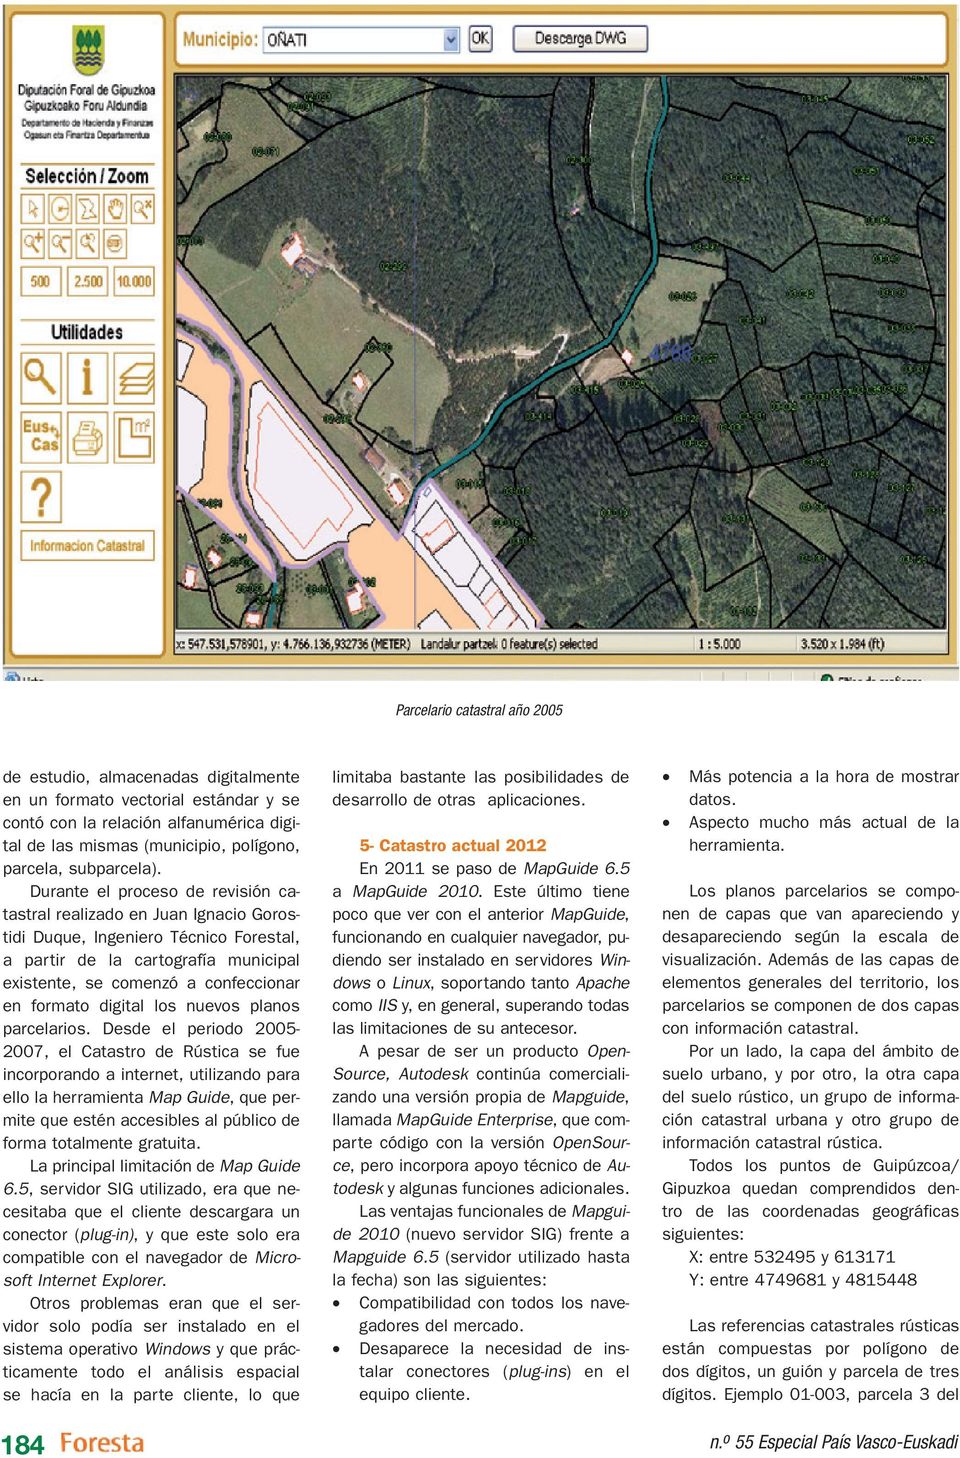 Durante el proceso de revisión catastral realizado en Juan Ignacio Gorostidi Duque, Ingeniero Técnico Forestal, a partir de la cartografía municipal existente, se comenzó a confeccionar en formato